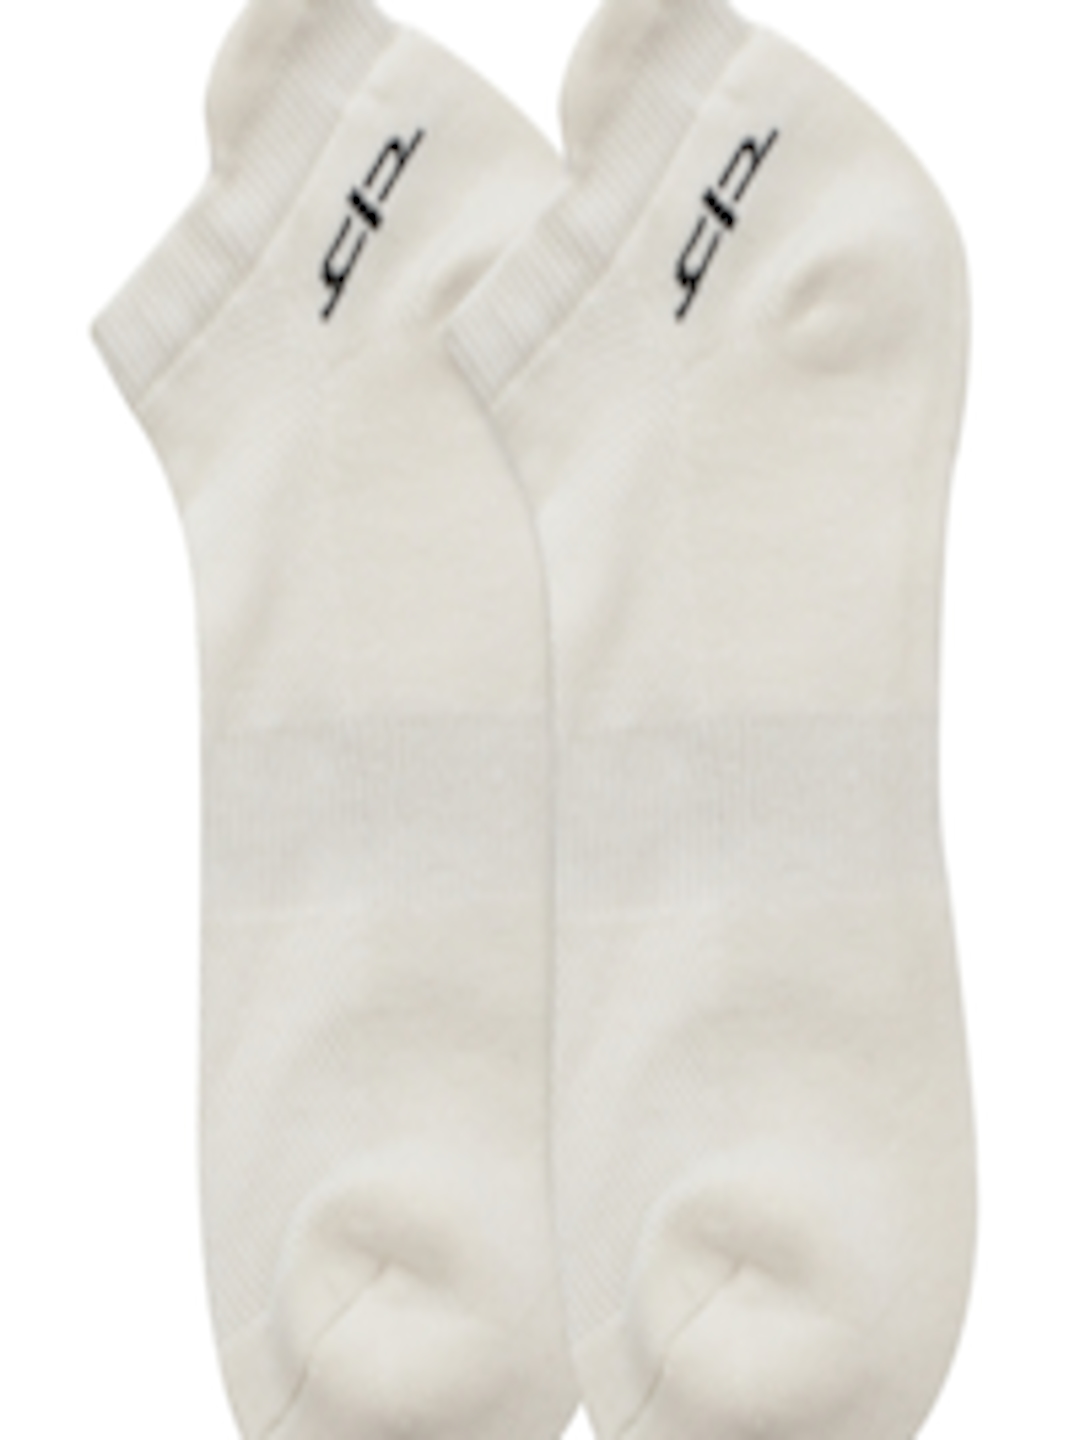 Buy Heelium Women White Solid Ankle Length Socks - Socks for Women ...